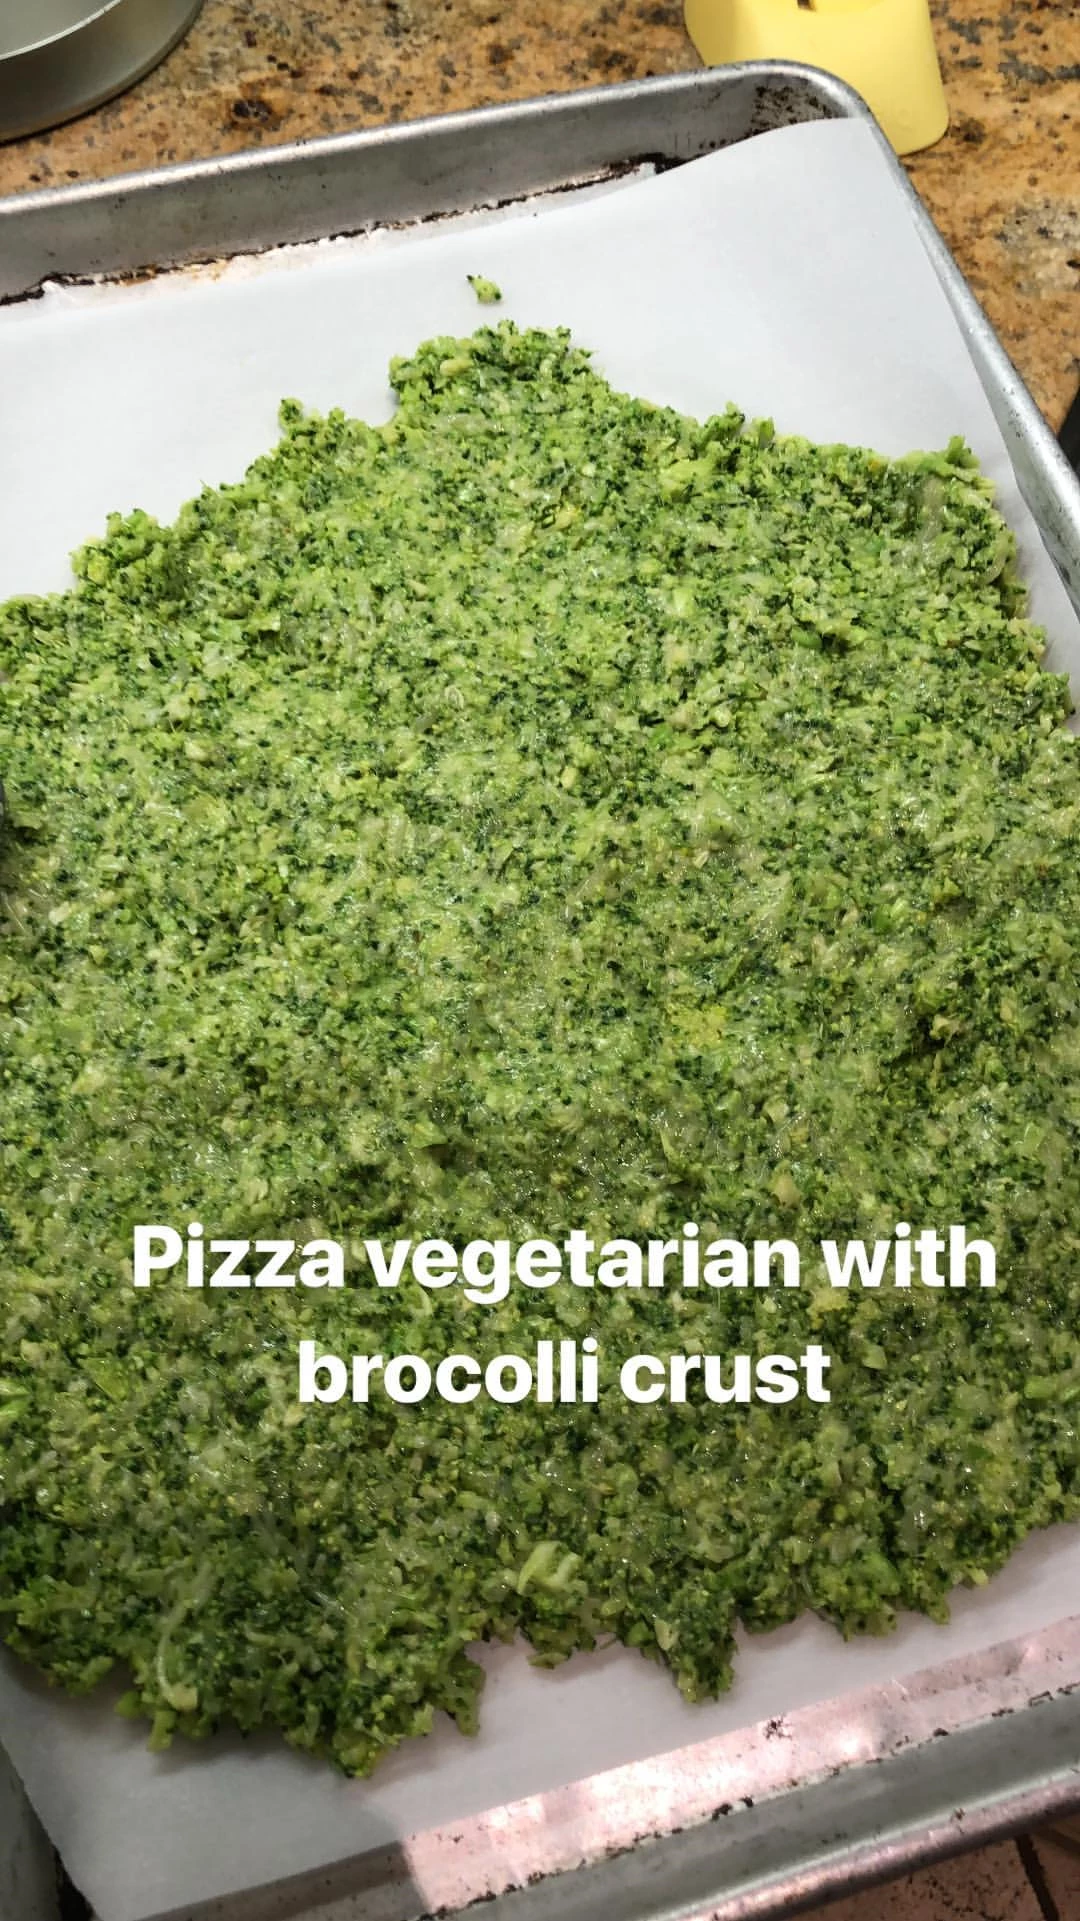 Η Μαριέττα Χρουσαλά σού δείχνει την πιο υγιεινή συνταγή για πίτσα